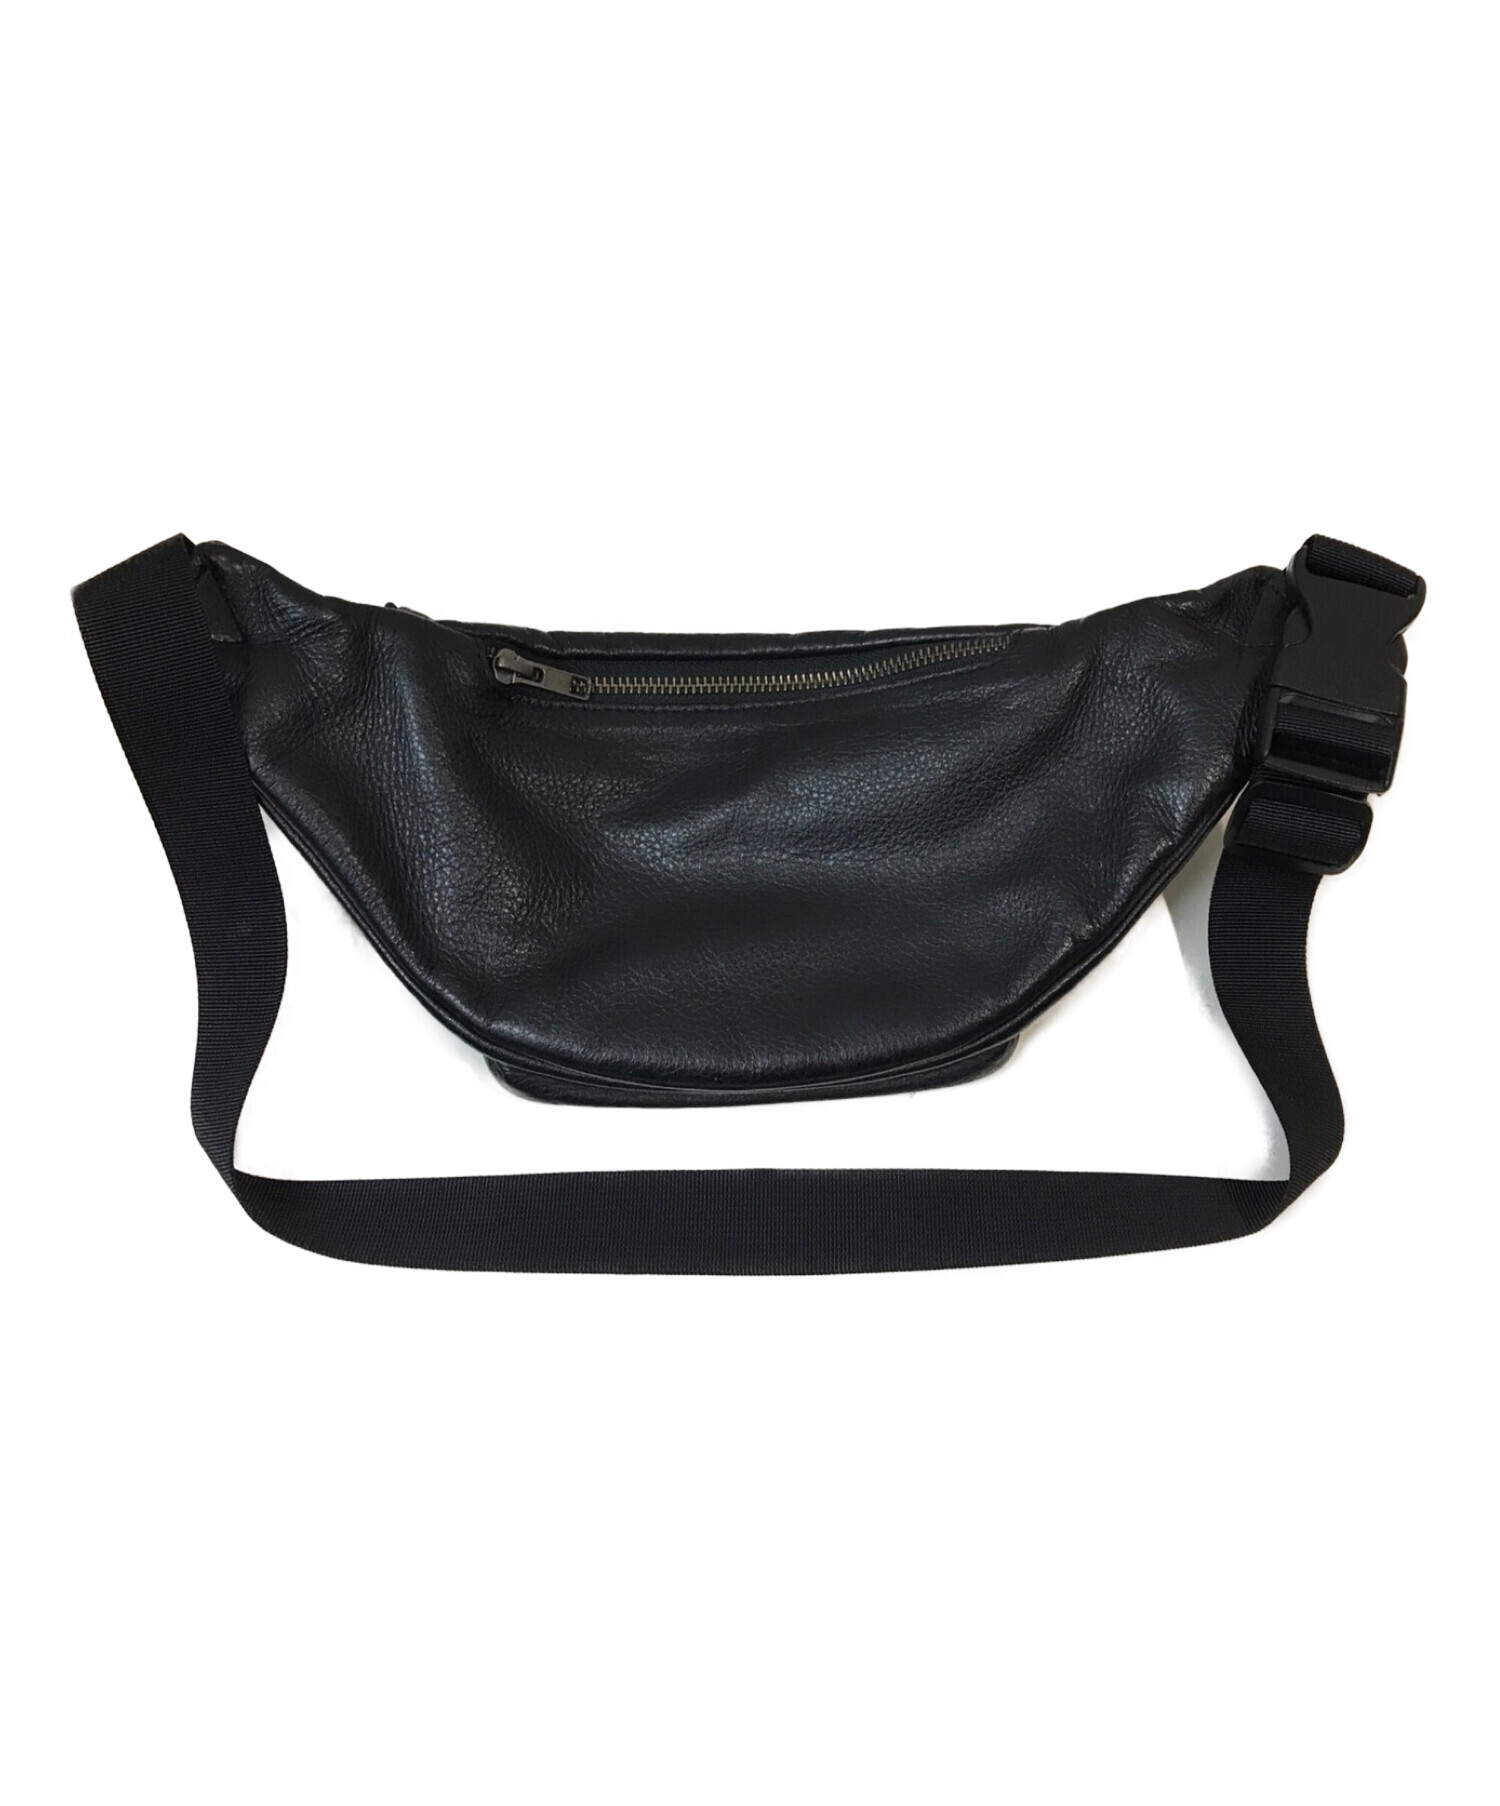 Supreme Leather Waist Bag Black 17ss 黒